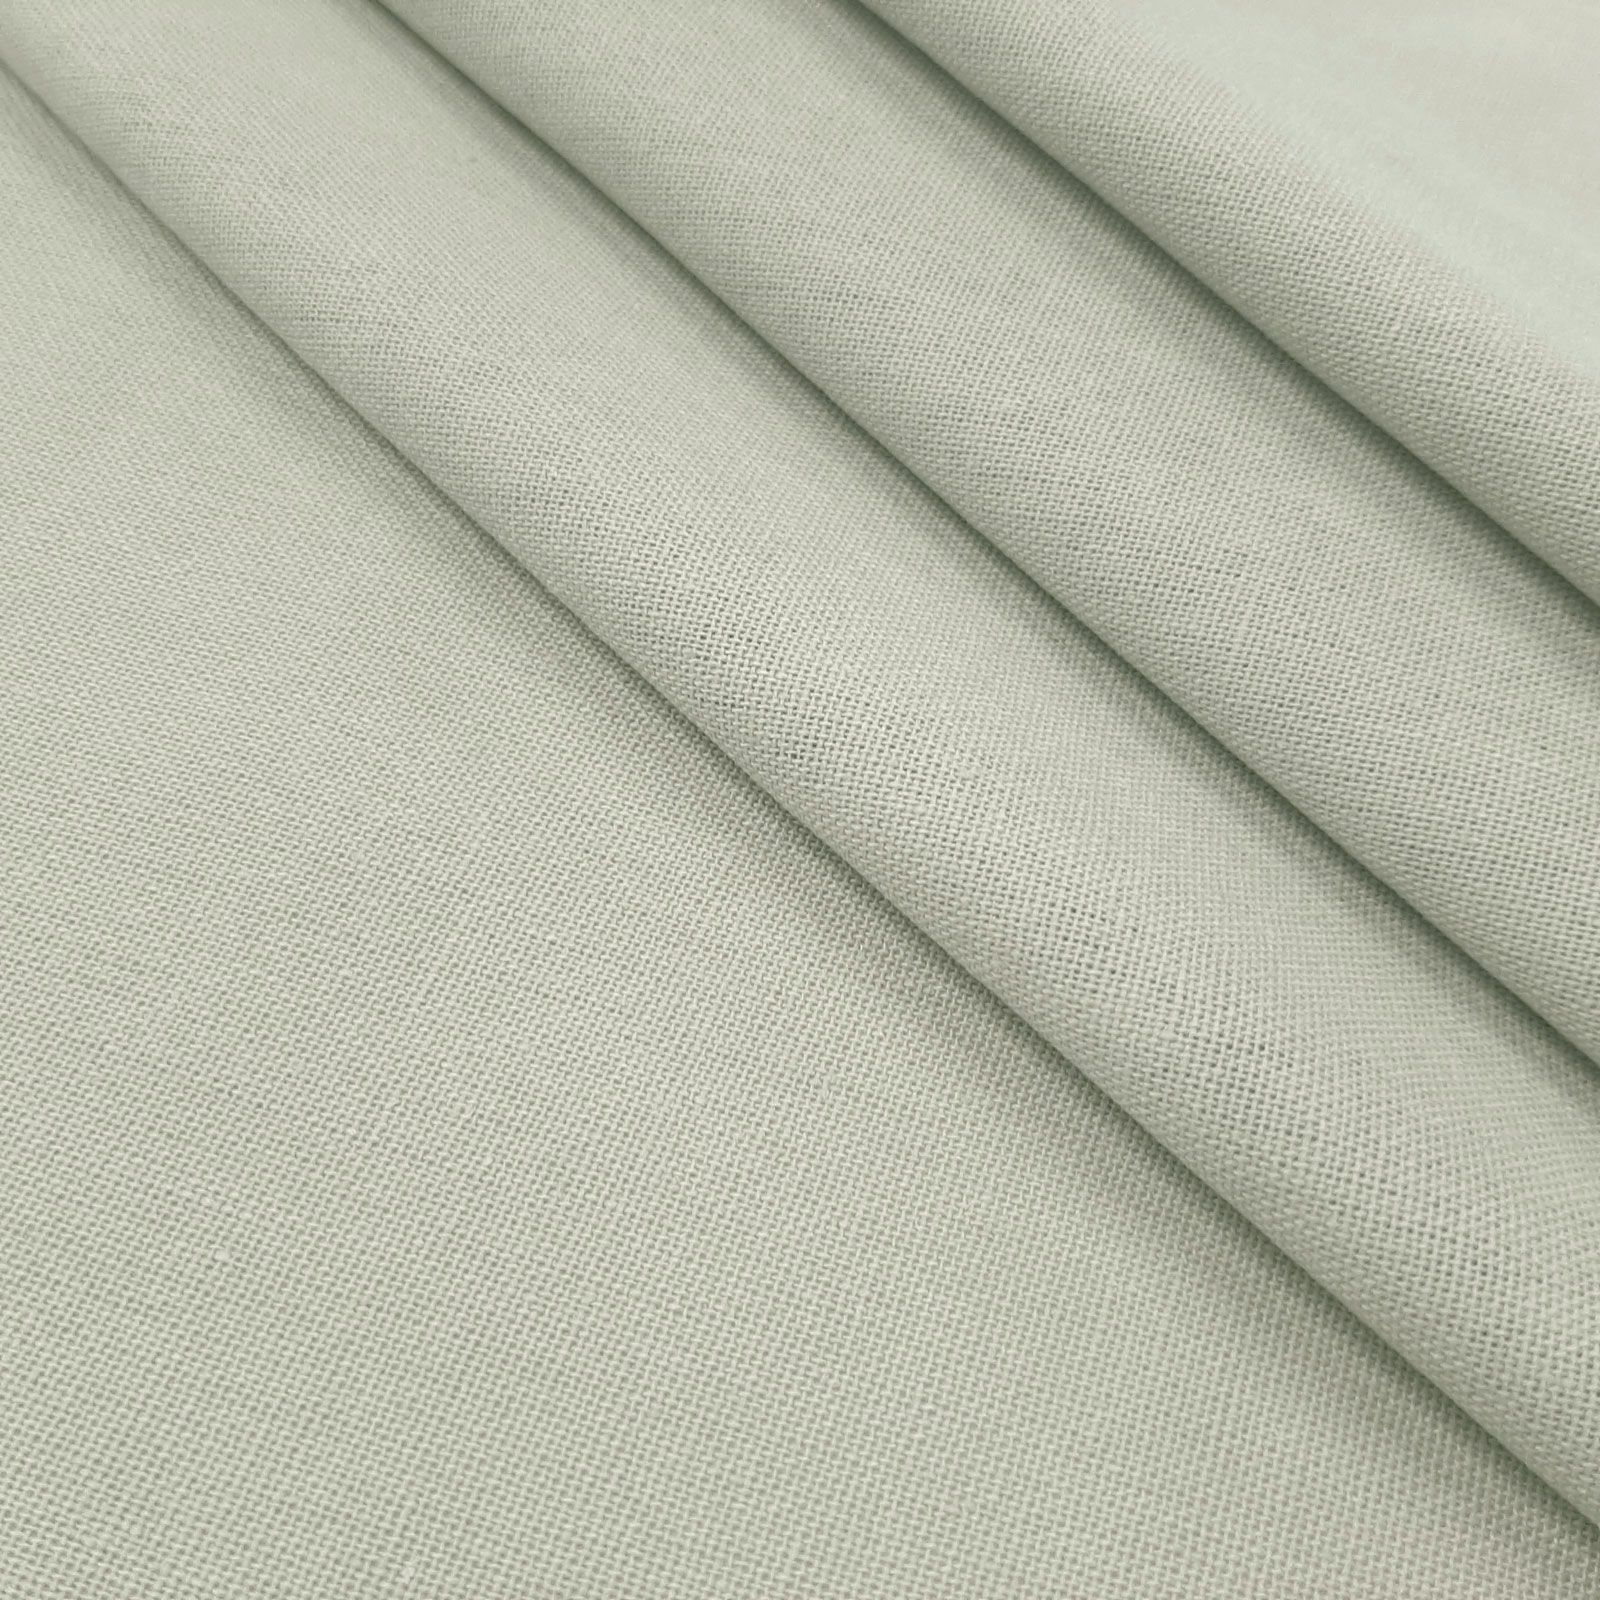 Bella - tecido de linho natural de algodão - Cinza Claro